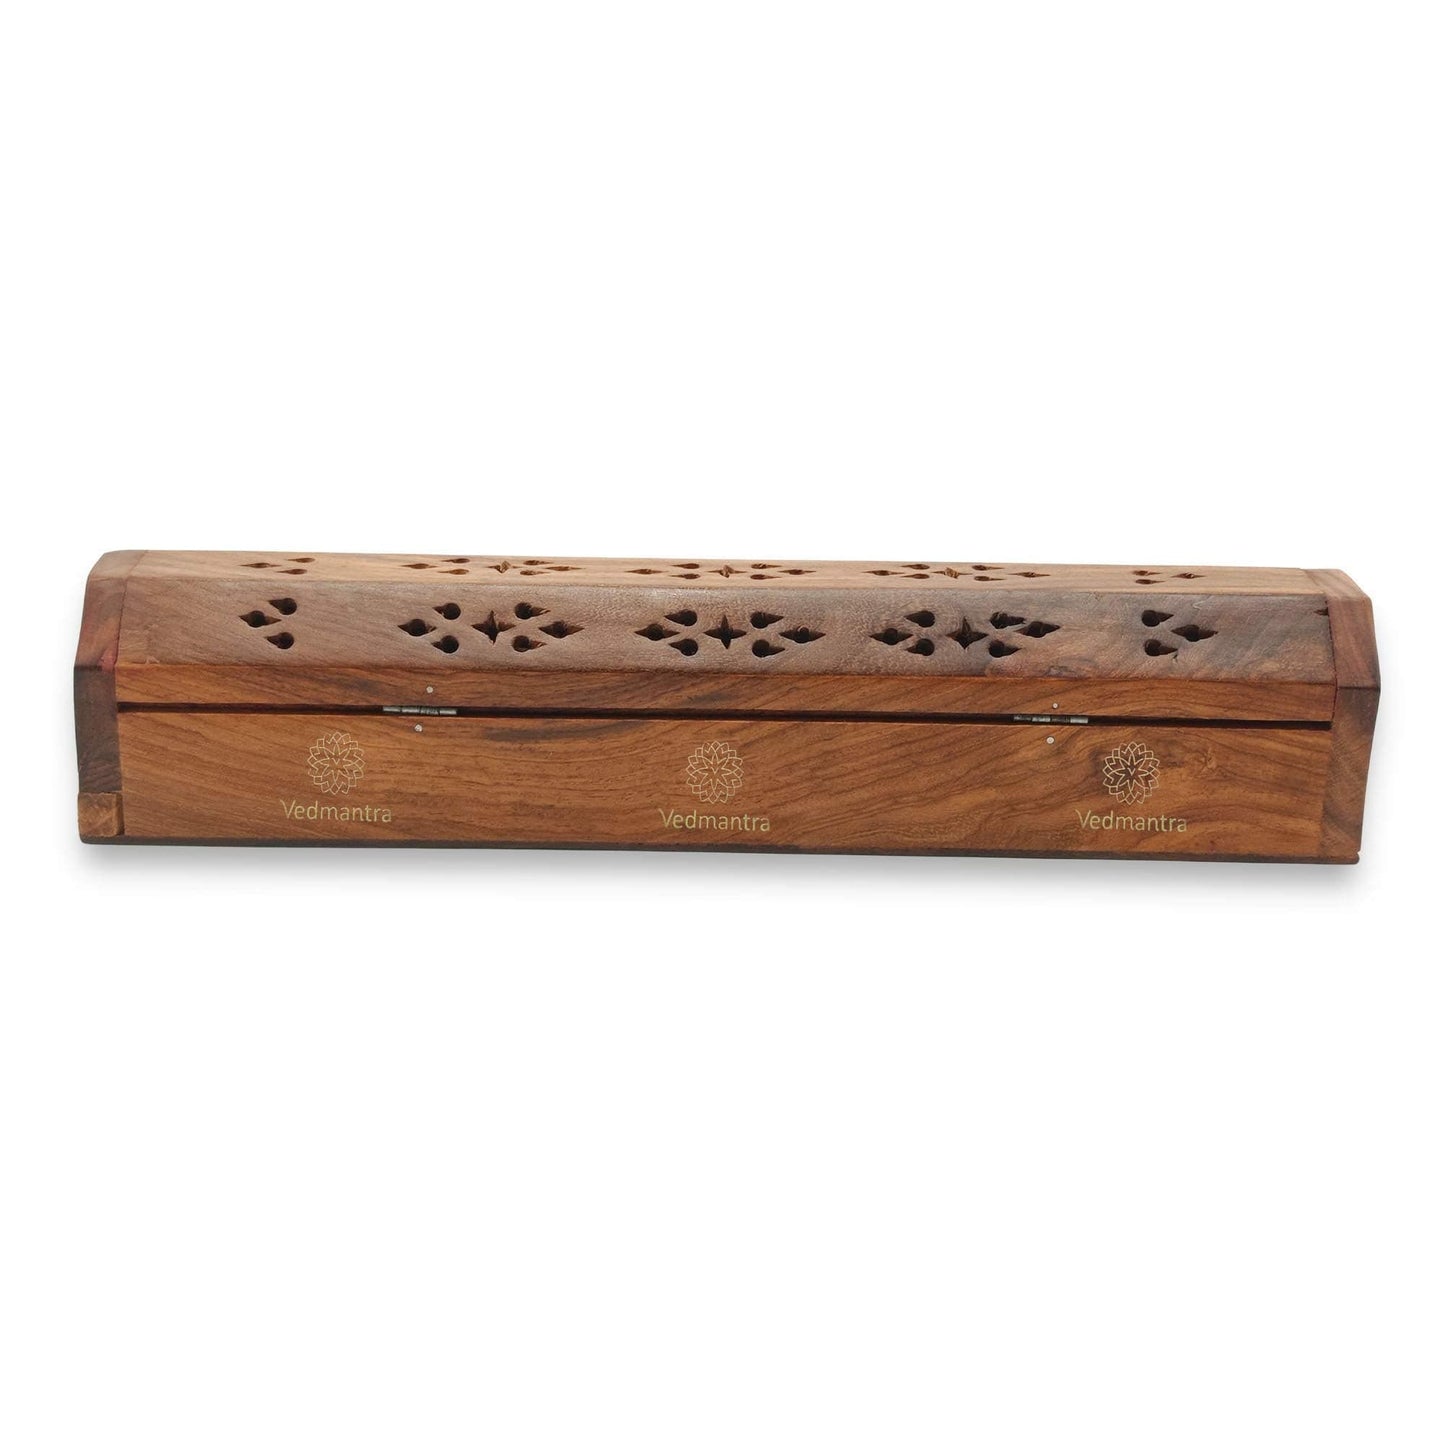 Vedmantra Coffin Incense Stick Holder